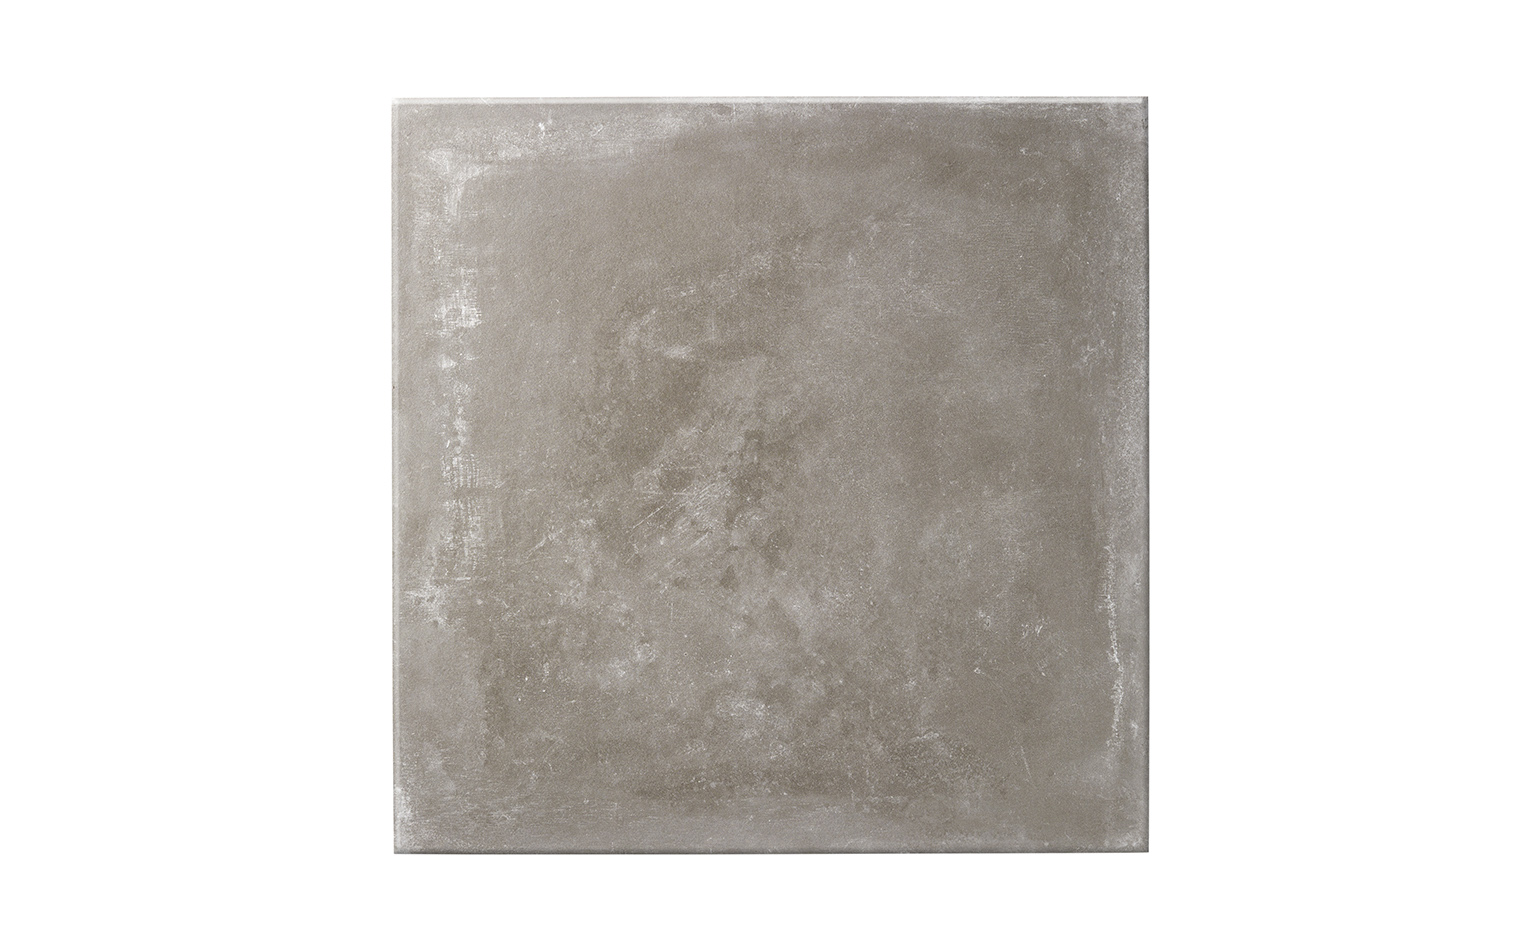 Carrelage AVENUE, aspect pierre gris, dim 60.00 x 60.00 cm